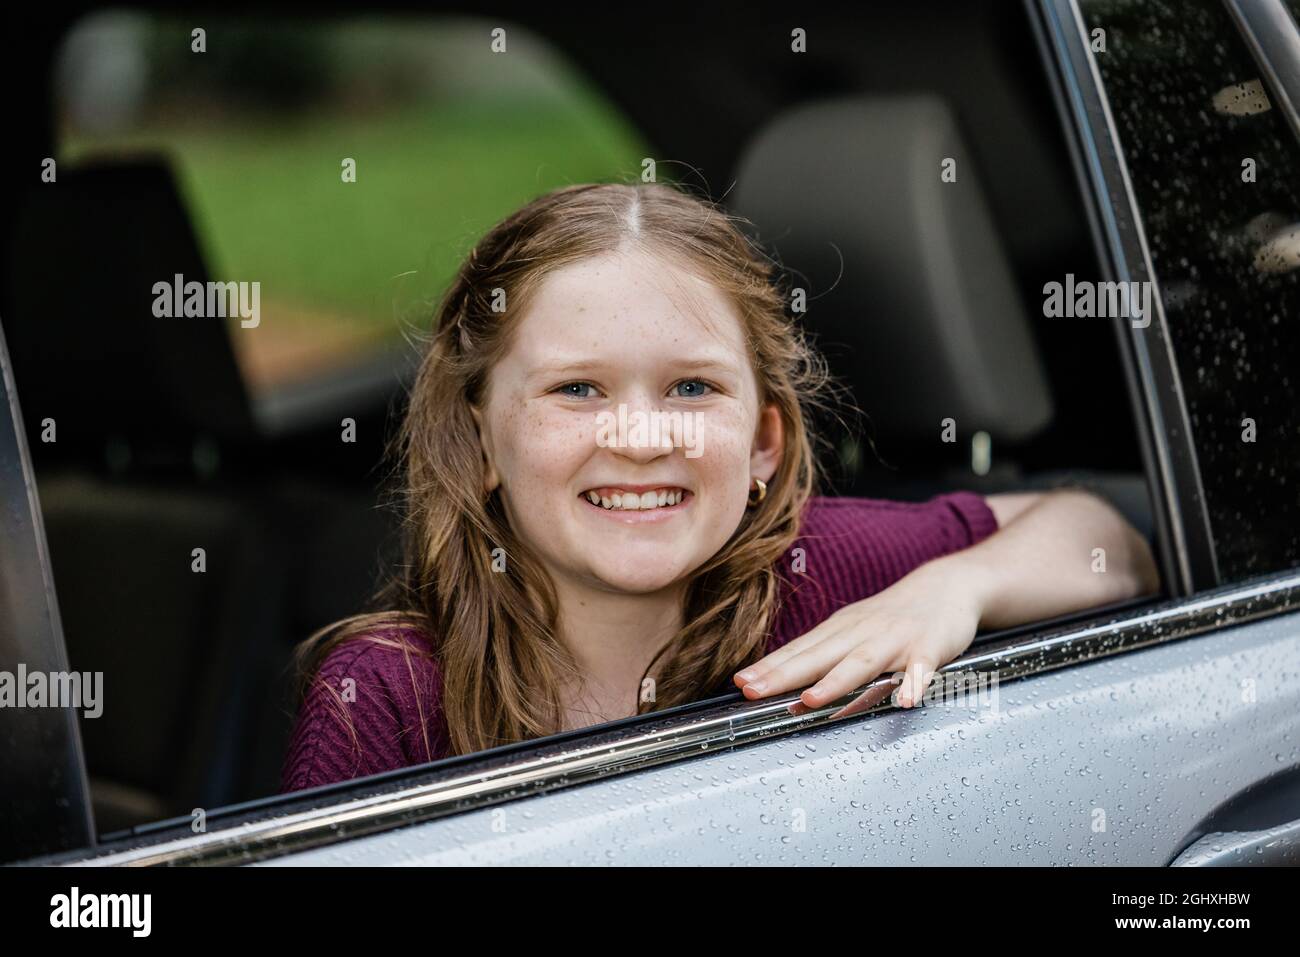 Kleines kaukasisches Mädchen mit Sommersprossen und einem lila Hemd, das aus einem Autofenster schaut Stockfoto